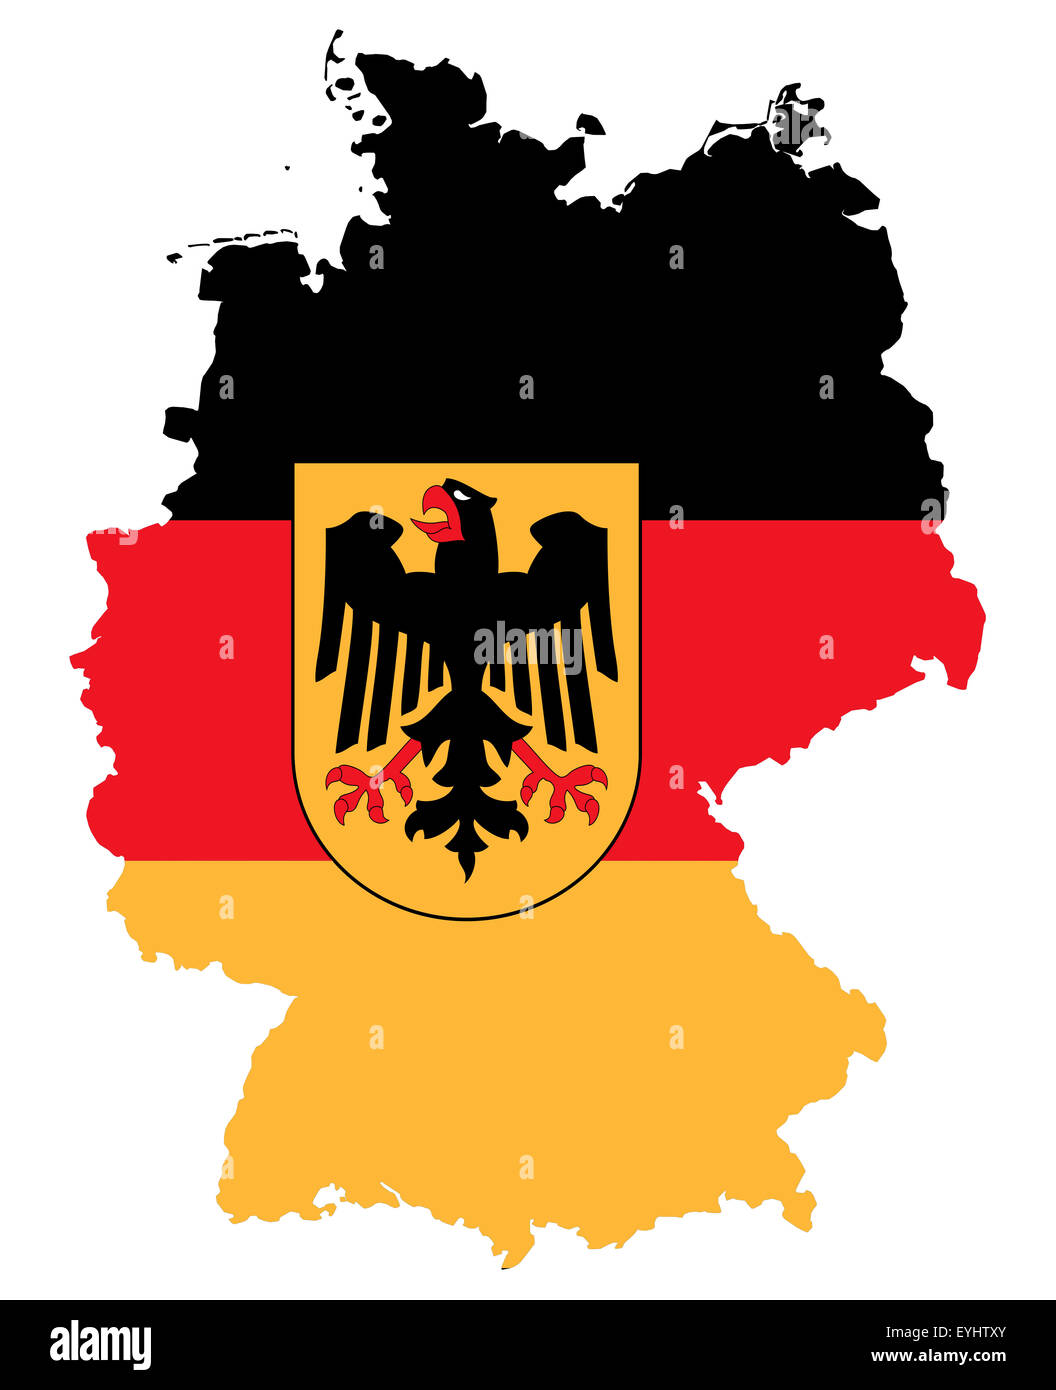 Symbolbild: Bundesrepublik Deutschland: Laenderumriss mit Flagge/ imagen simbólica: República Federal de Alemania: esbozo y la bandera Foto de stock